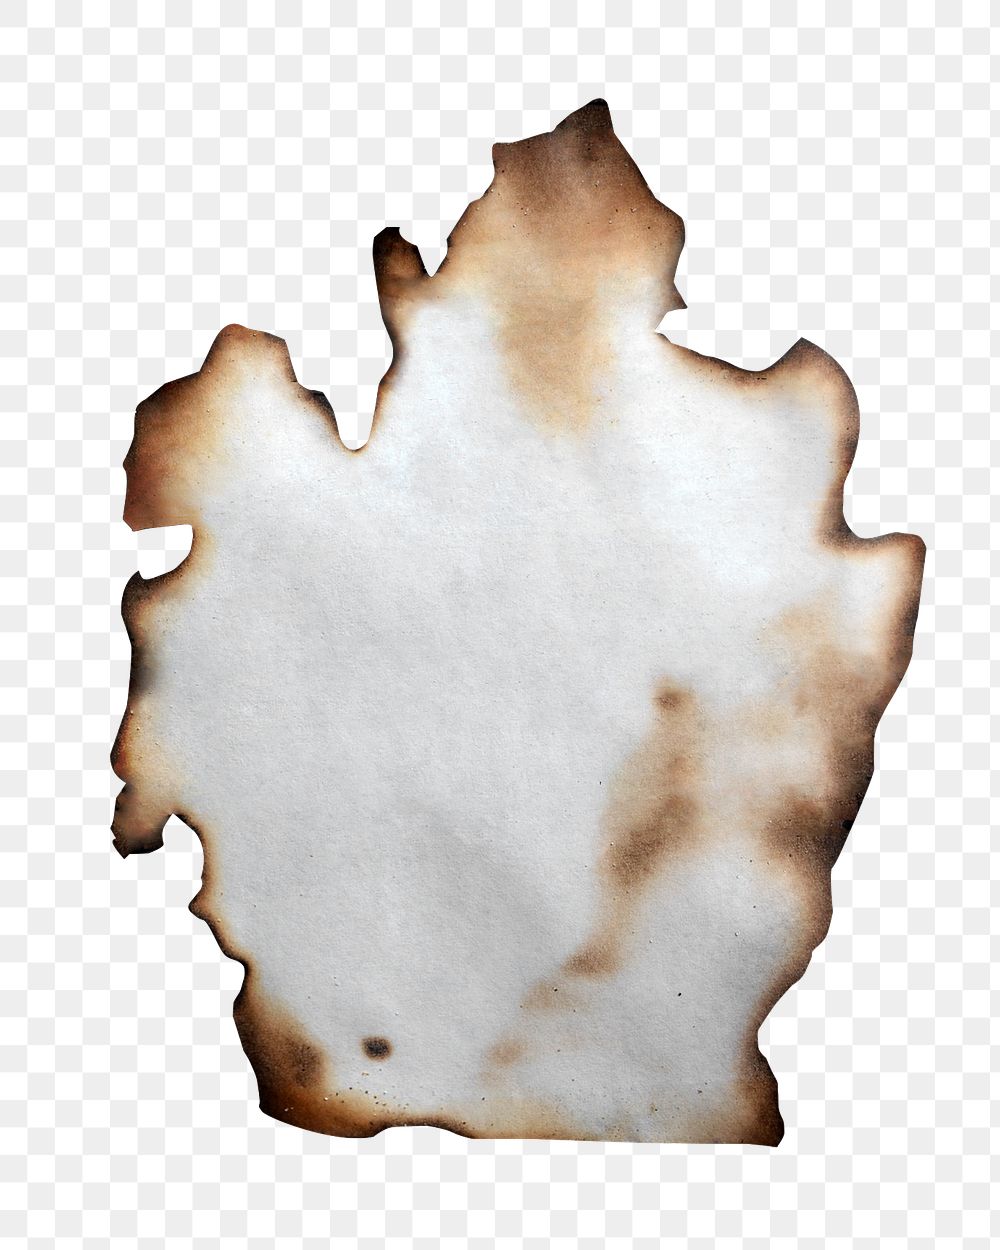 Burned paper png sticker, transparent background